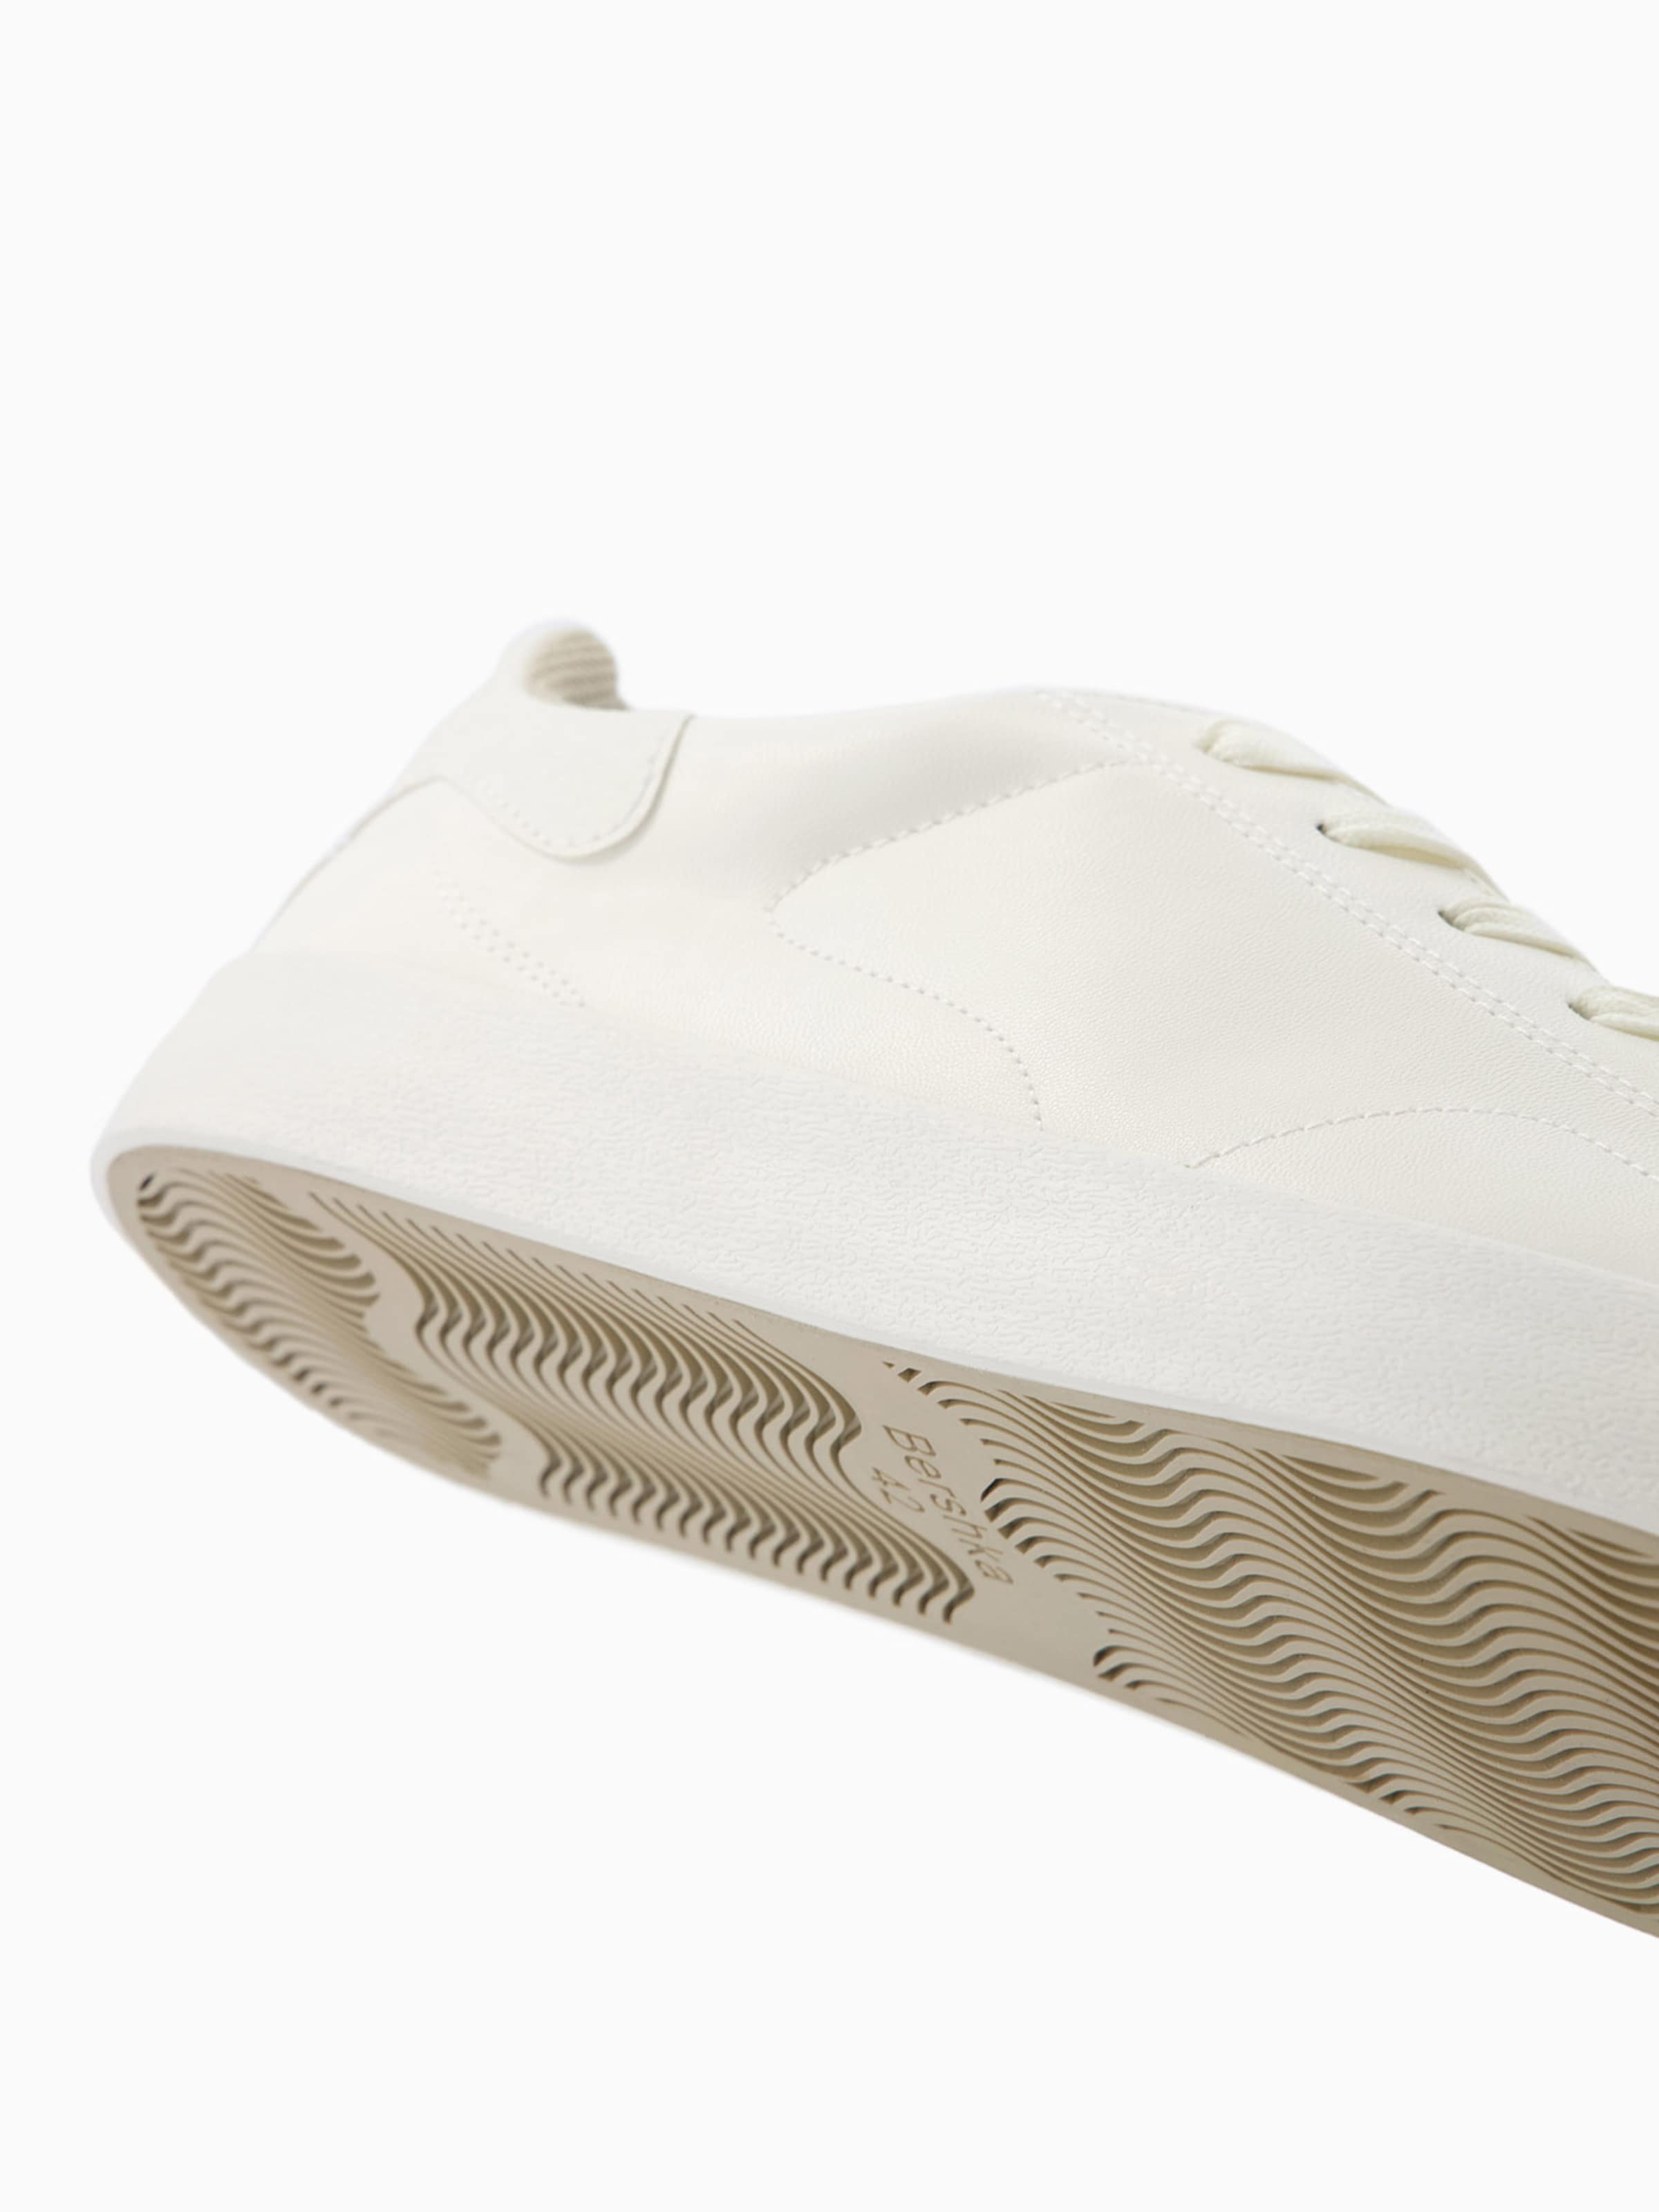 Bershka Brand Air Jordan 13 Retro Sneakers - Blinkenzo